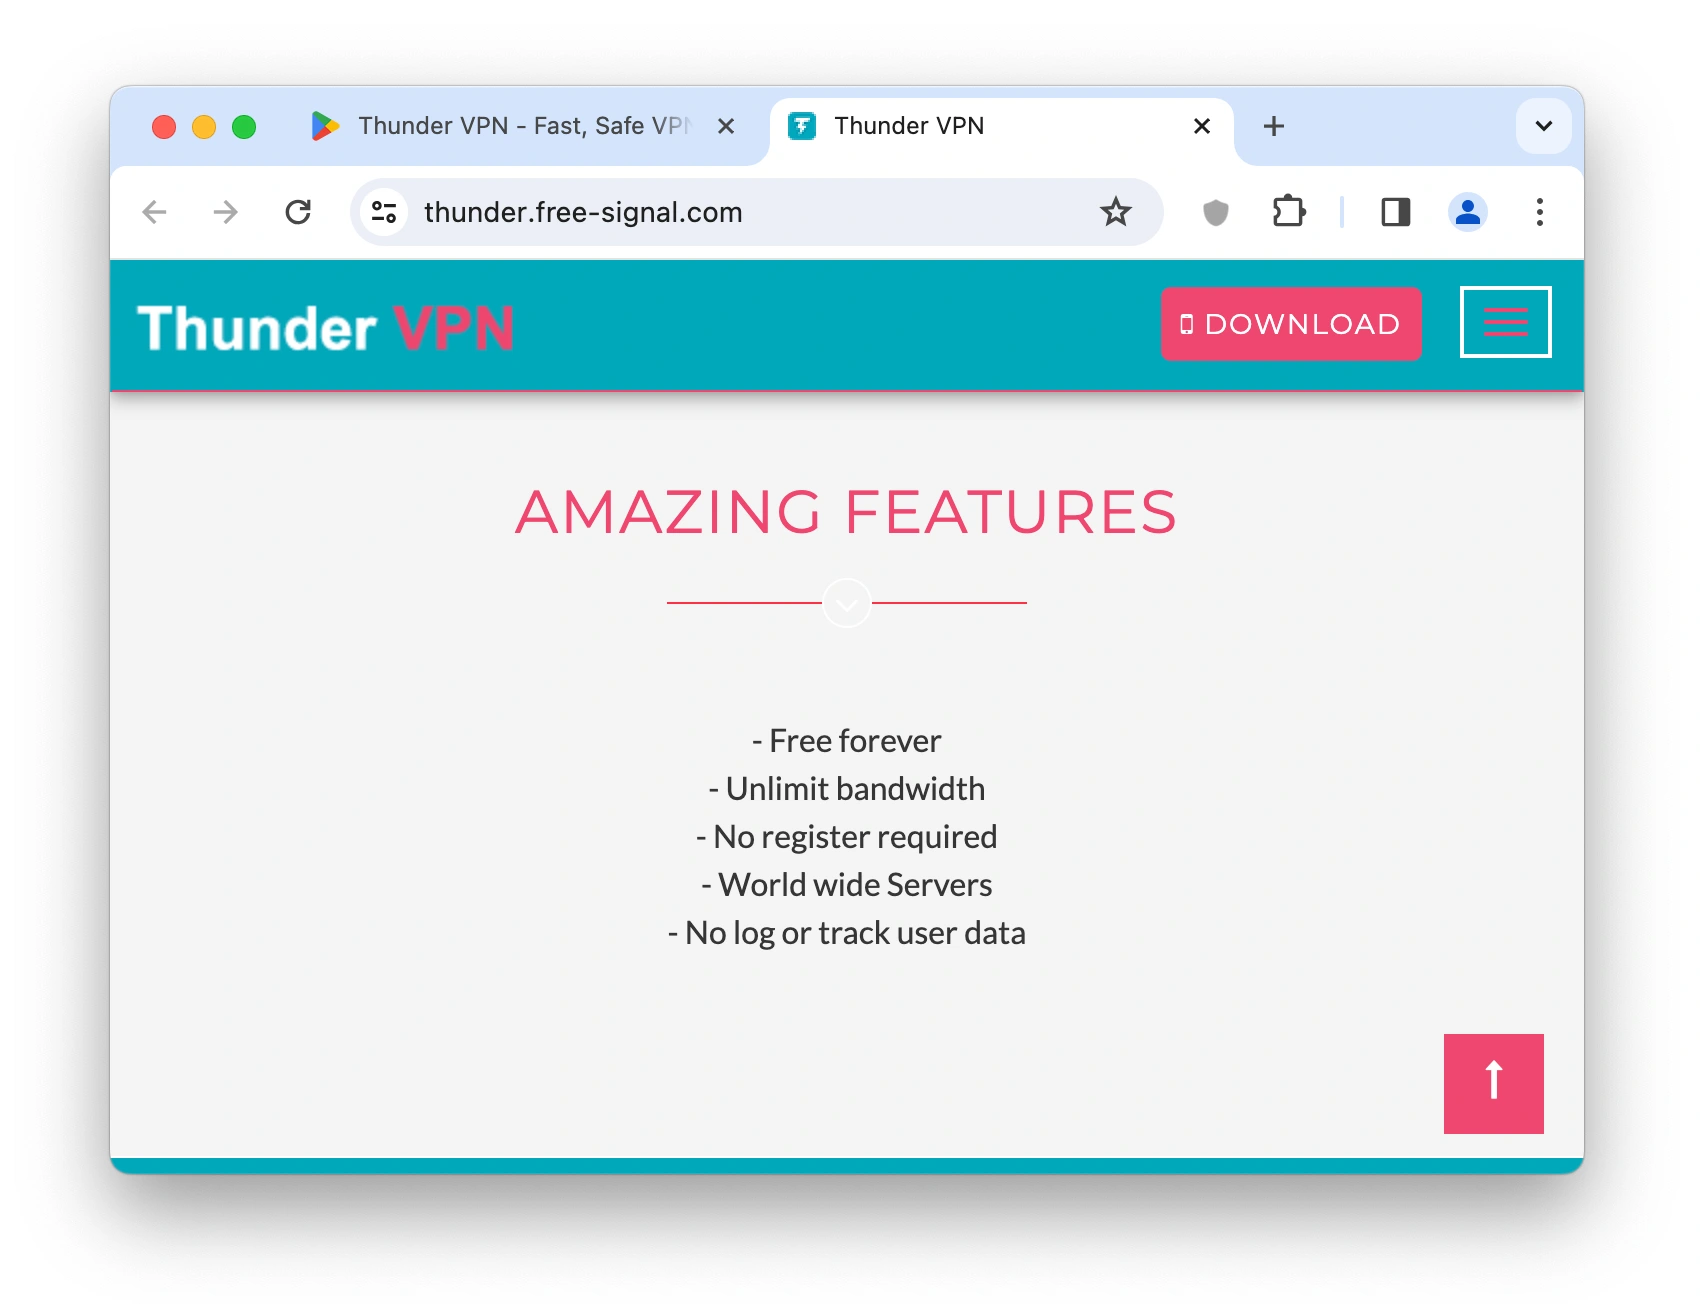 Thunder VPN's website homepage